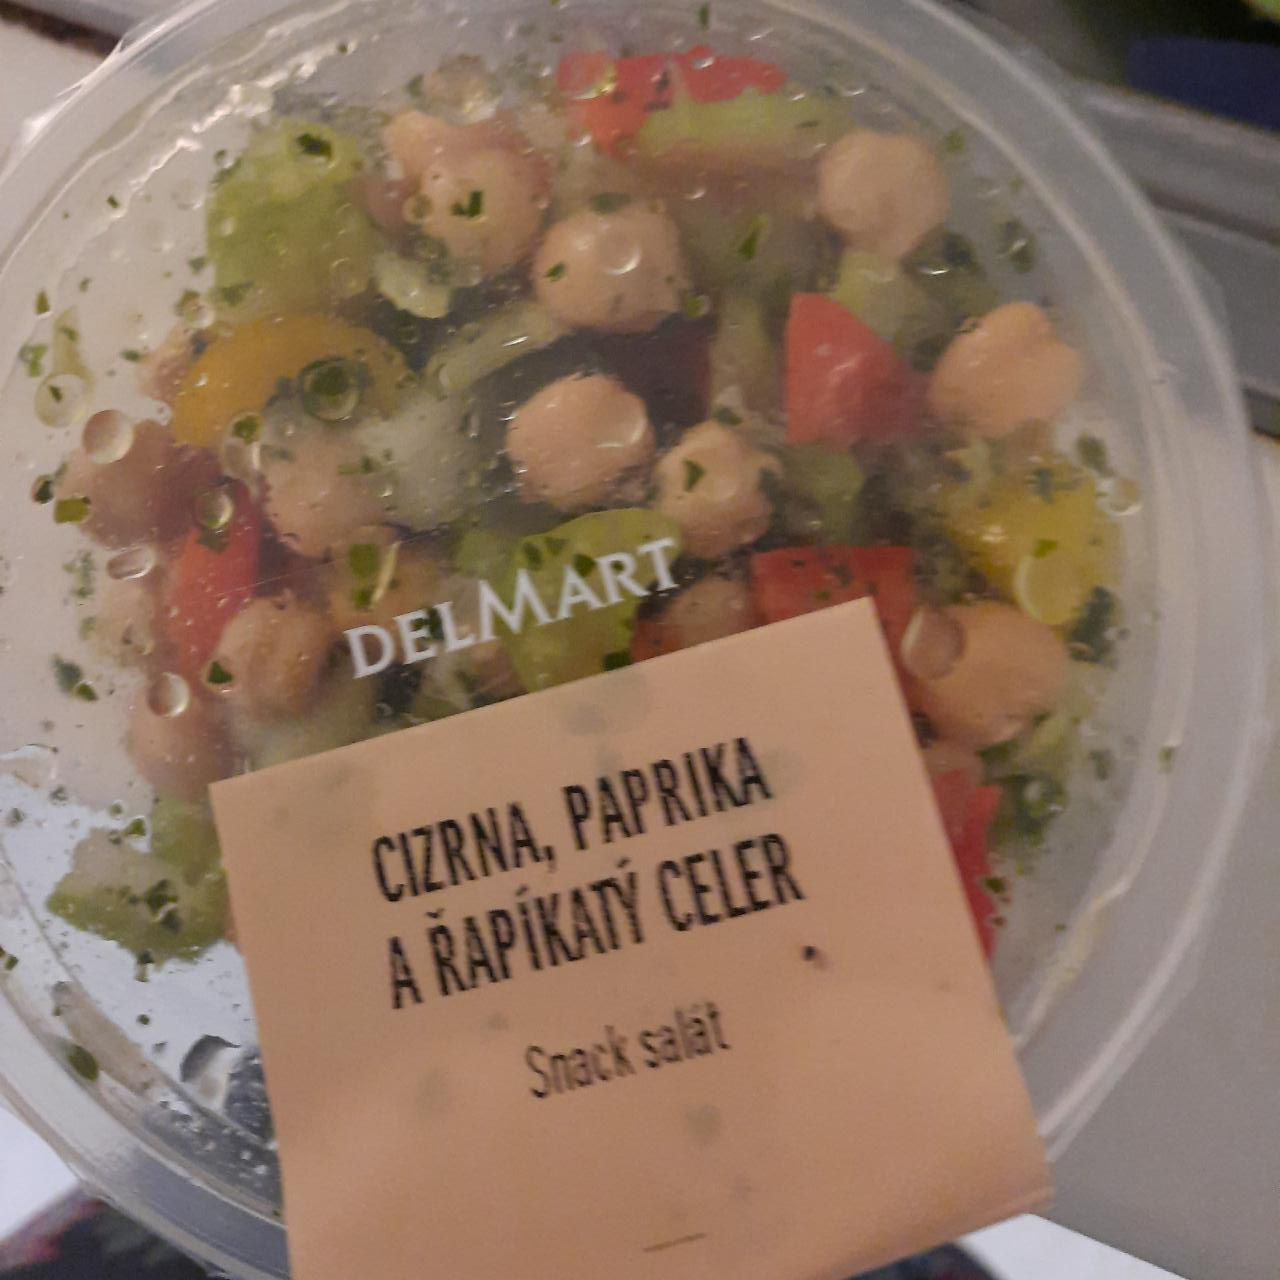 Fotografie - Cizrna, paprika a řapíkatý celer Snack salát Delmart